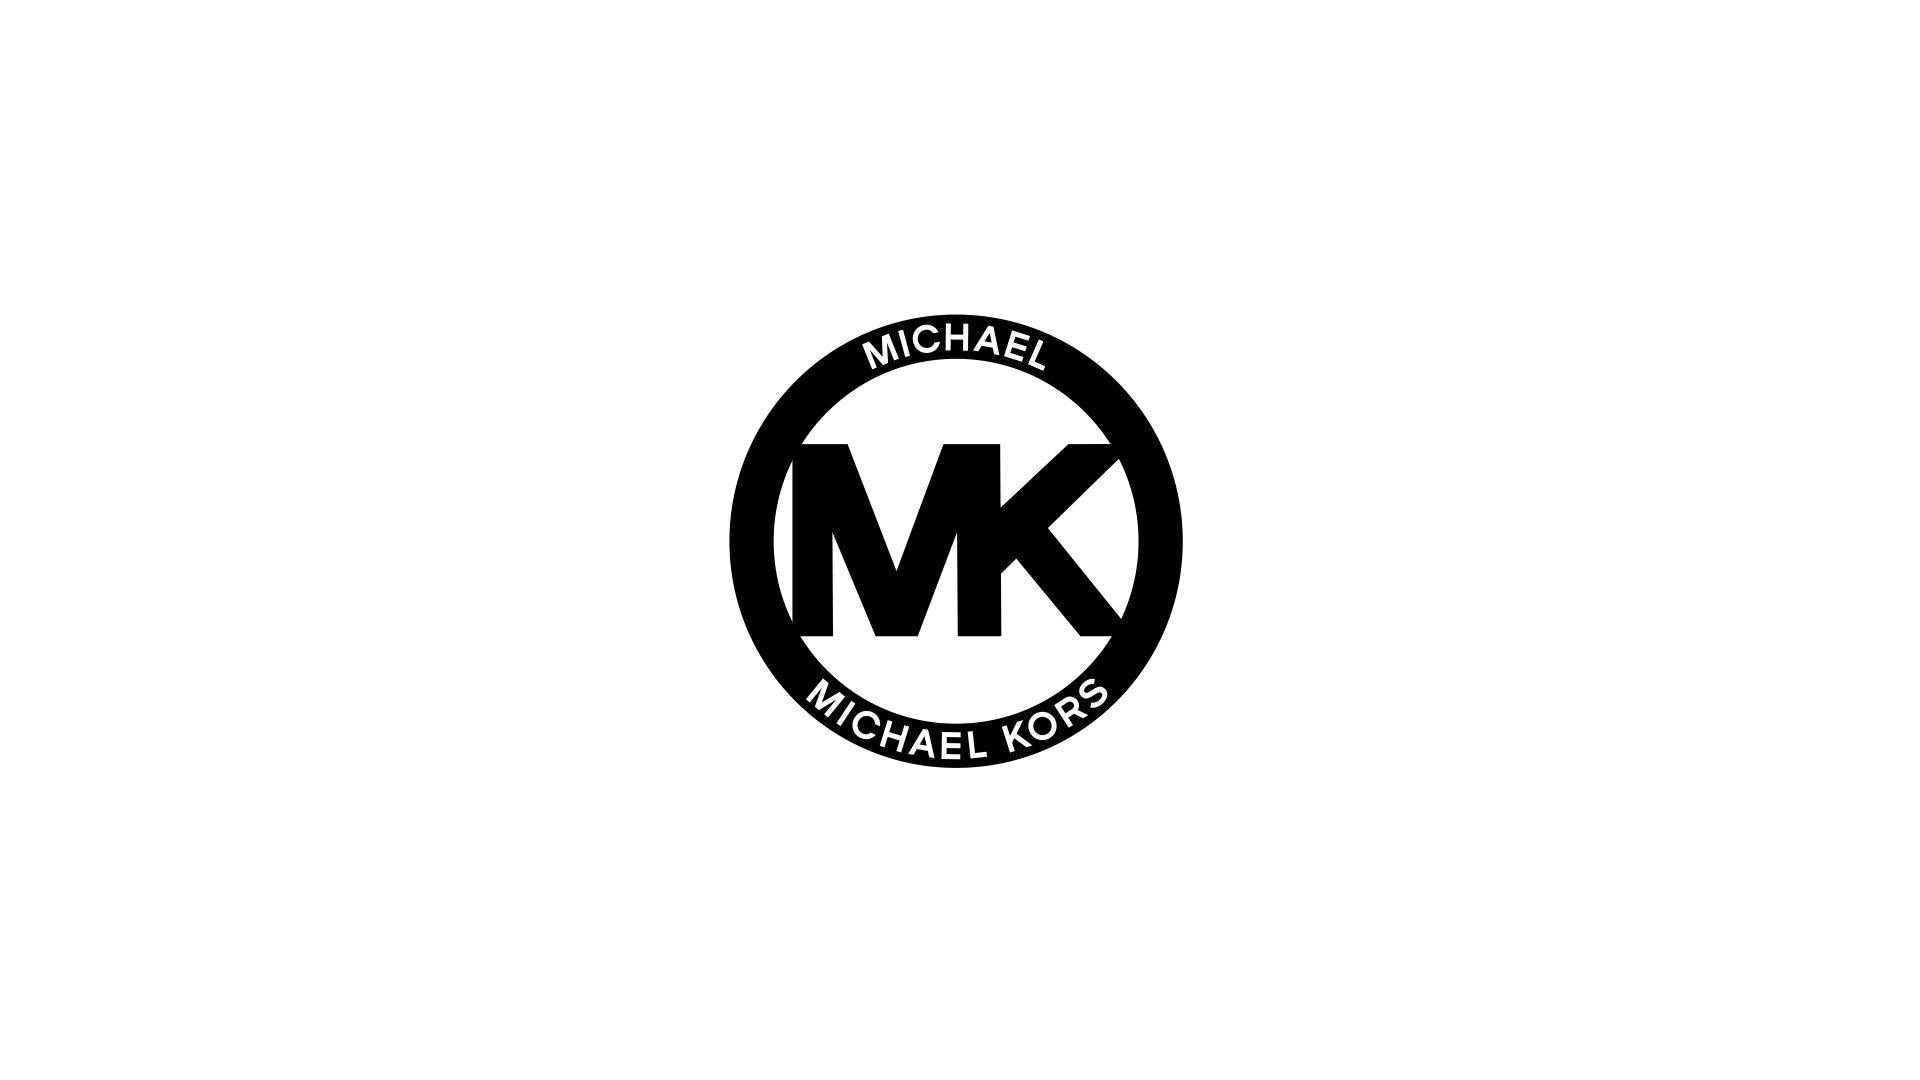 Michael Kors Iconic Minimalist Logo Background